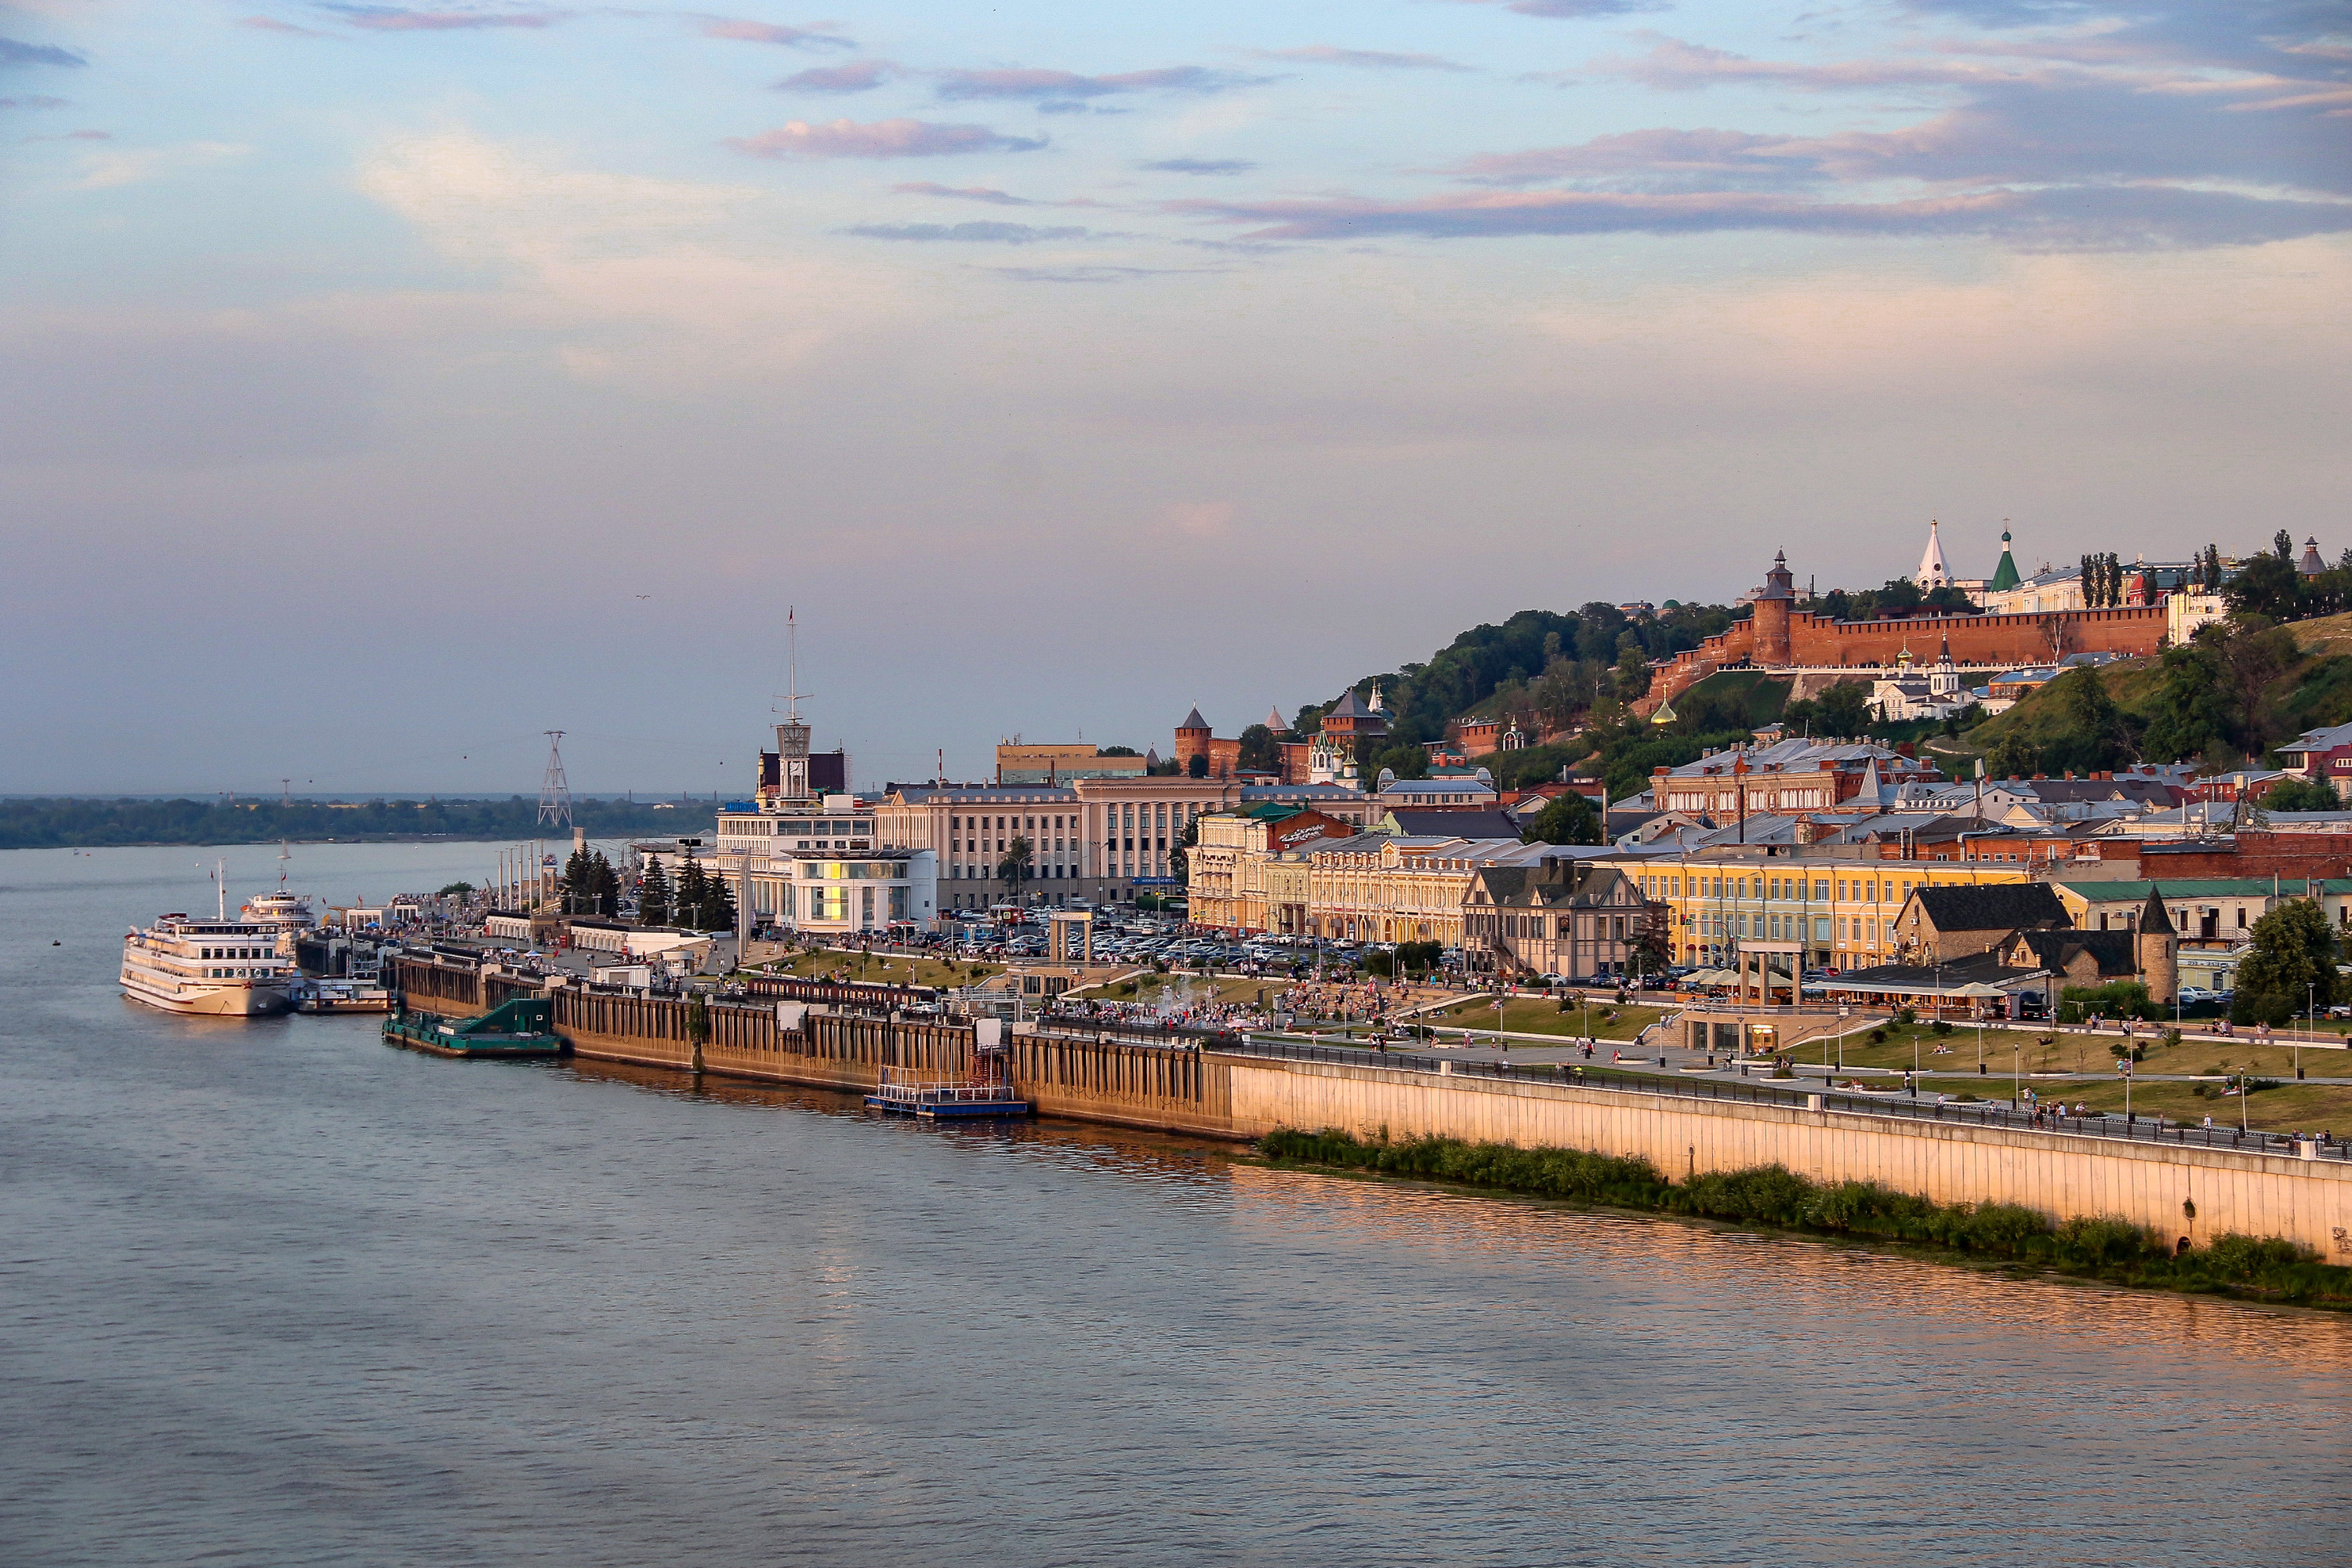 Нижний Новгород расположен при слиянии двух крупнейших водных путей европейской части России — рек Волги и Оки